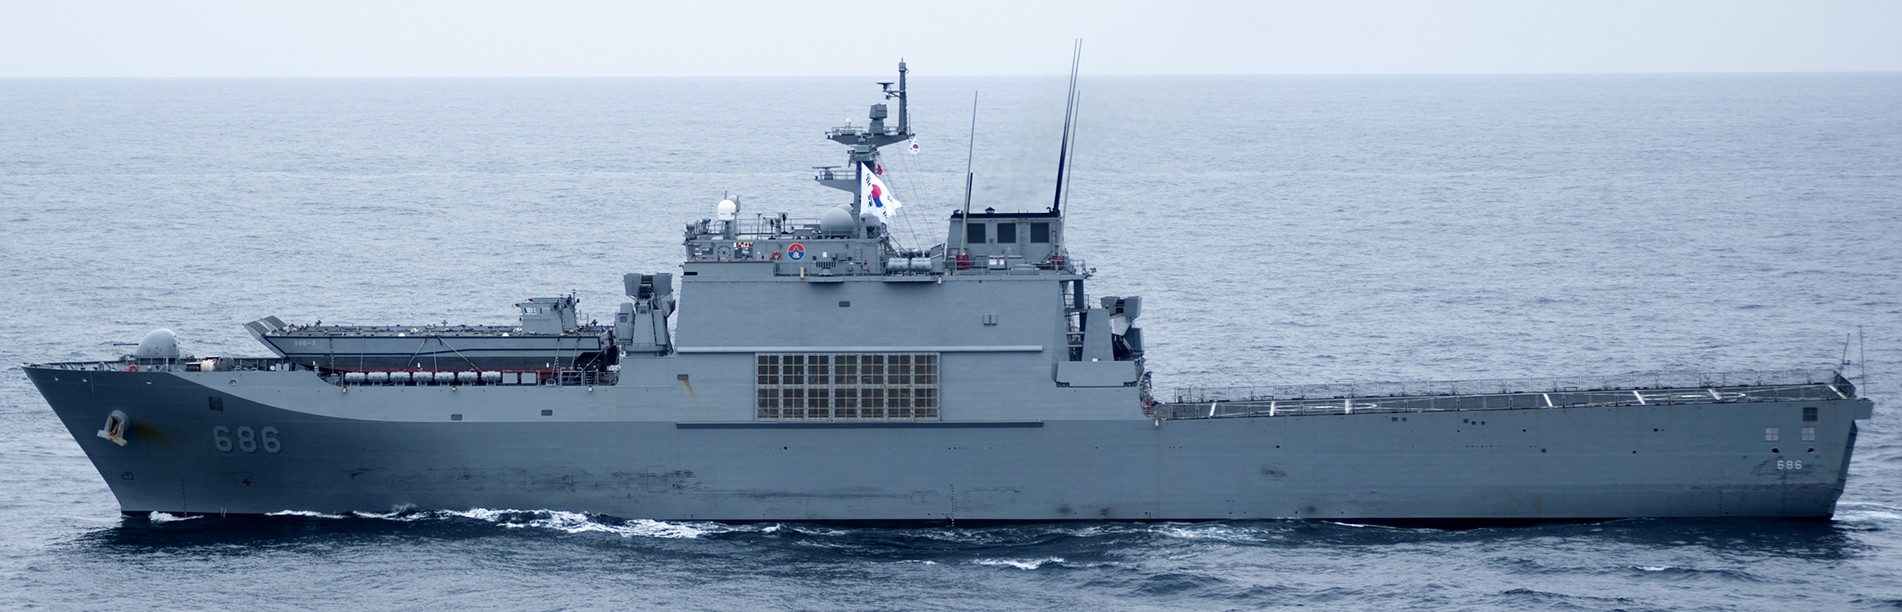 cheon wang bong class landing ship tank lst korean navy rokn hanjin hyundai 04x